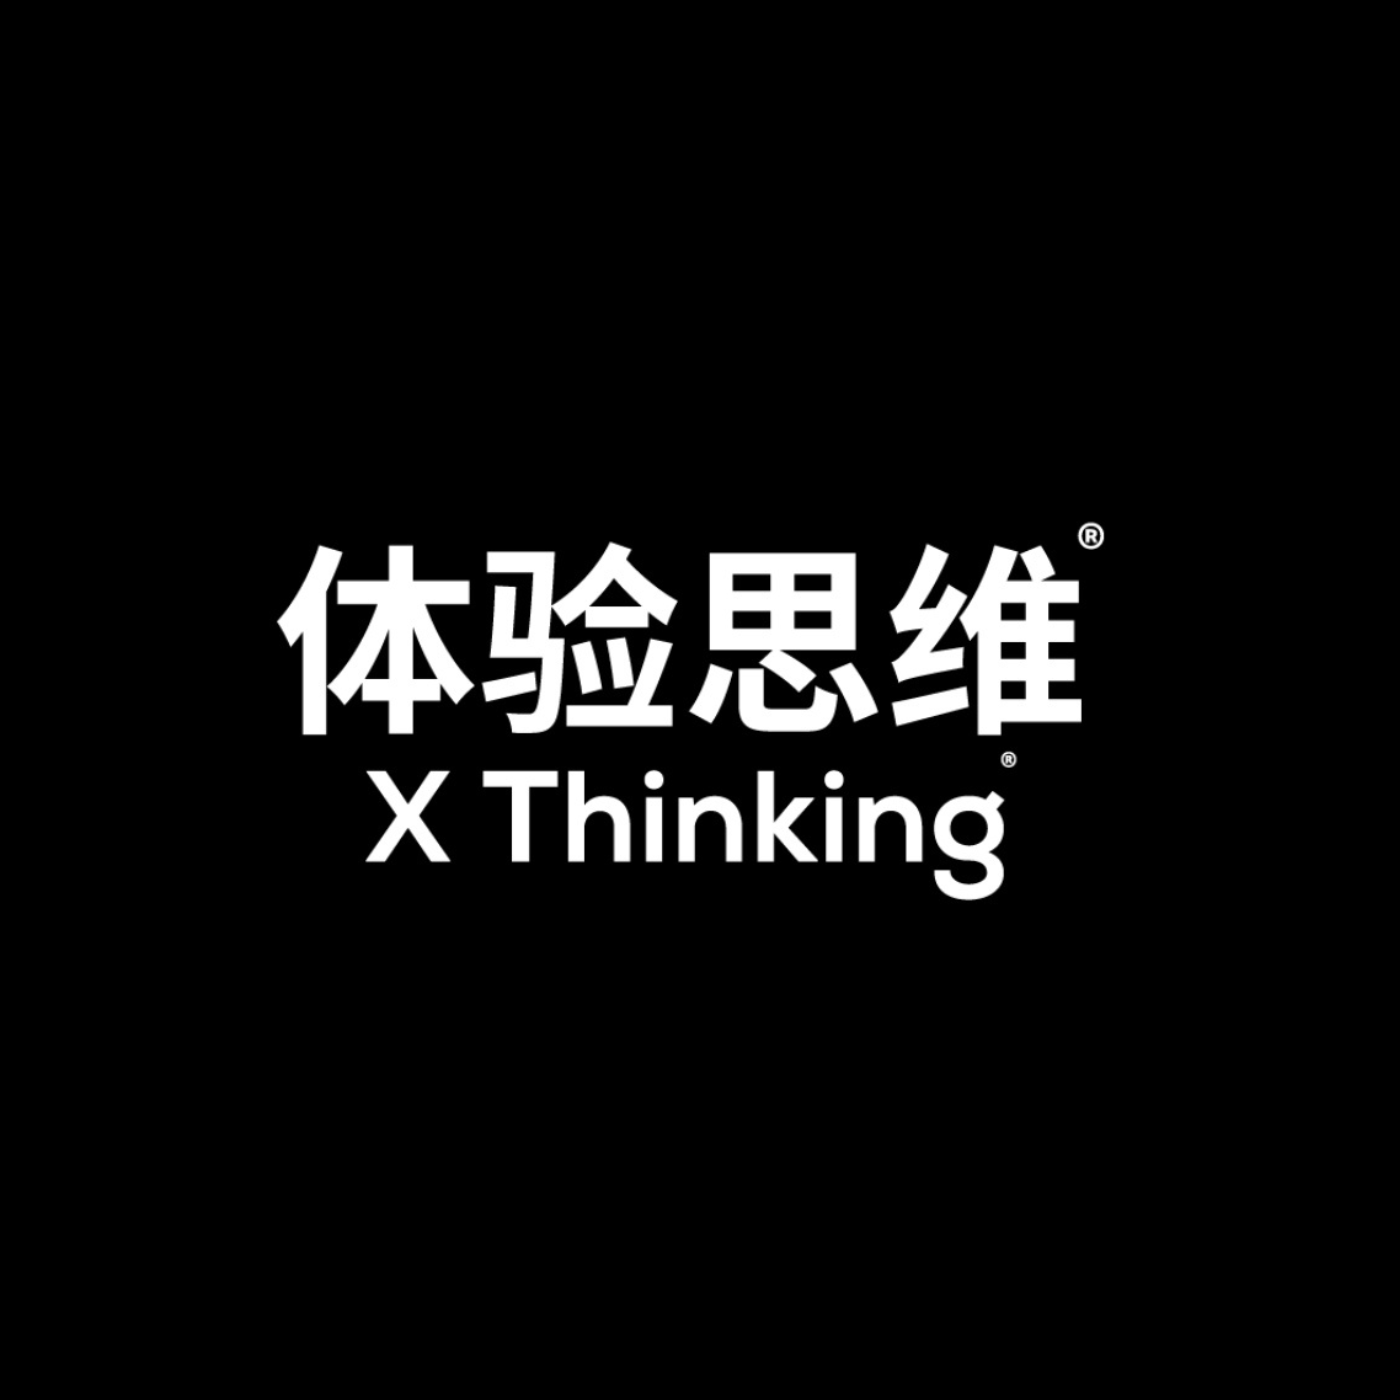 体验思维X Thinking